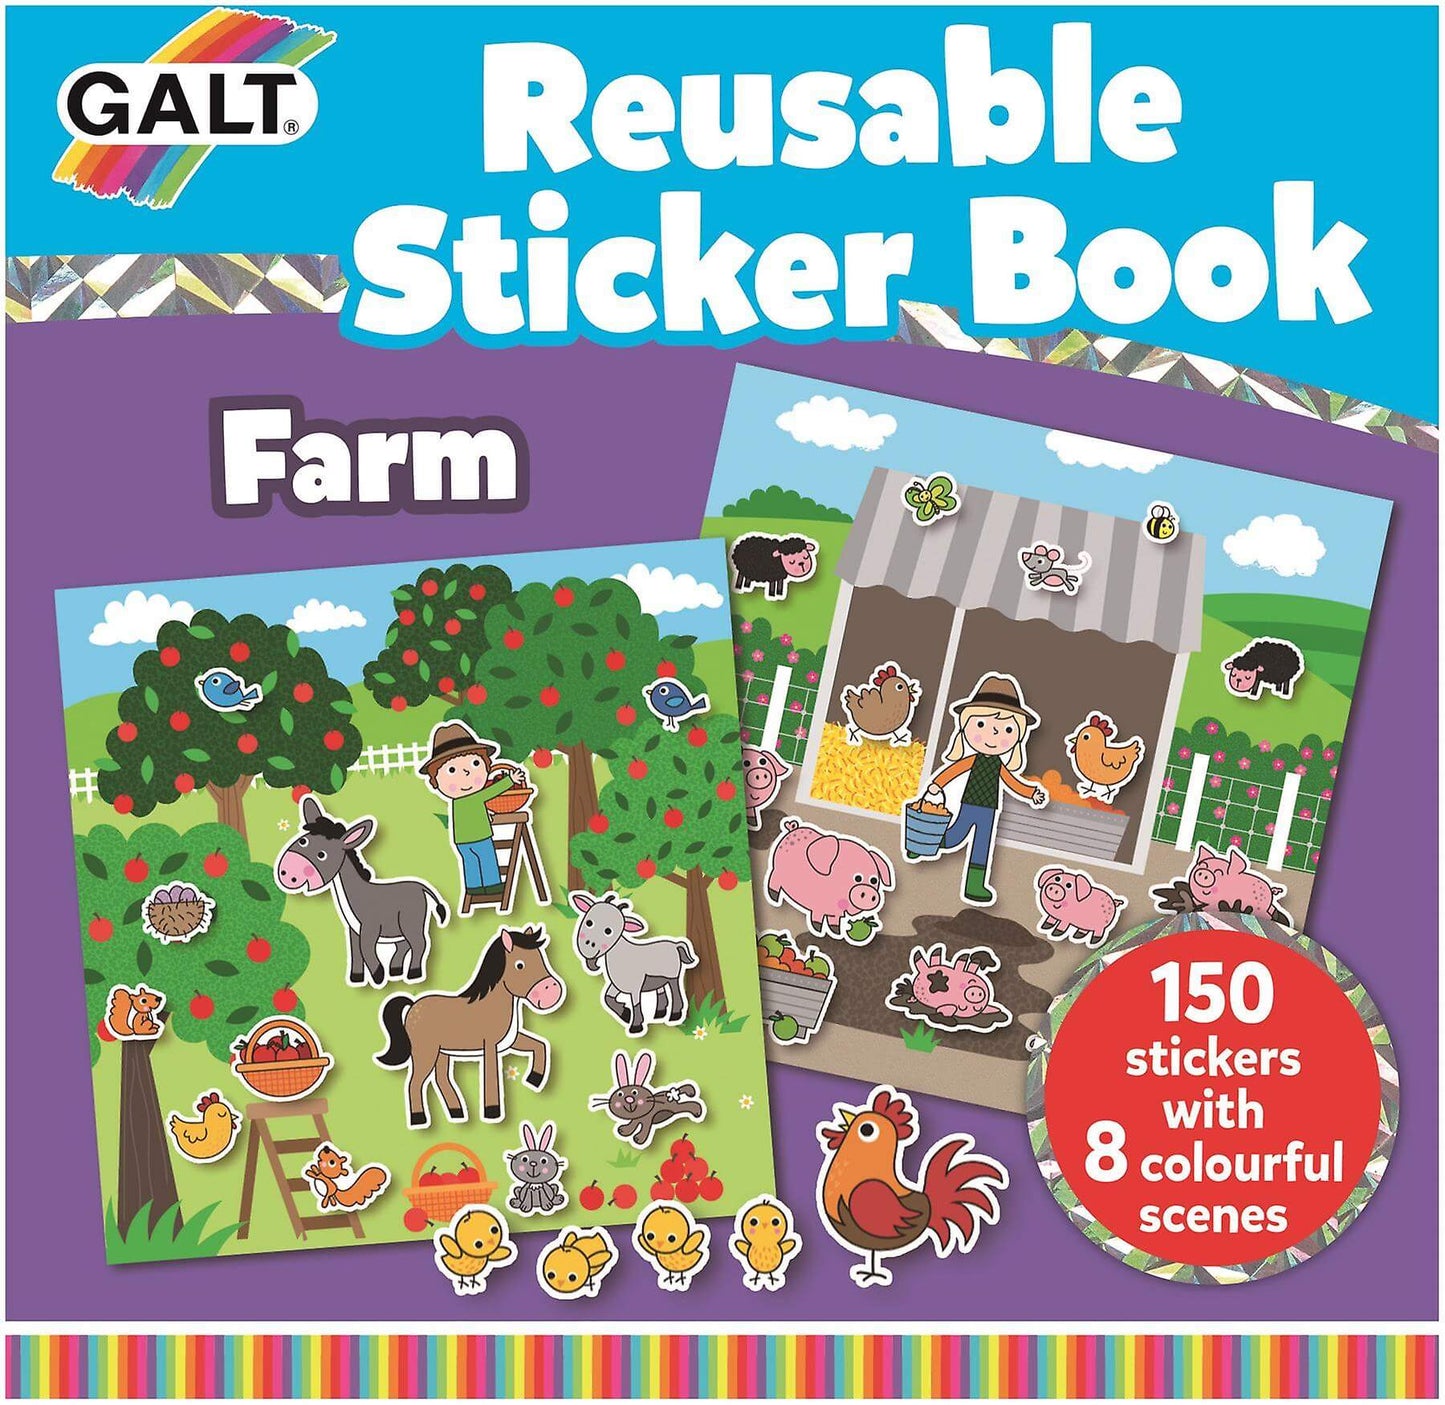 Reusable Sticker Book Farm